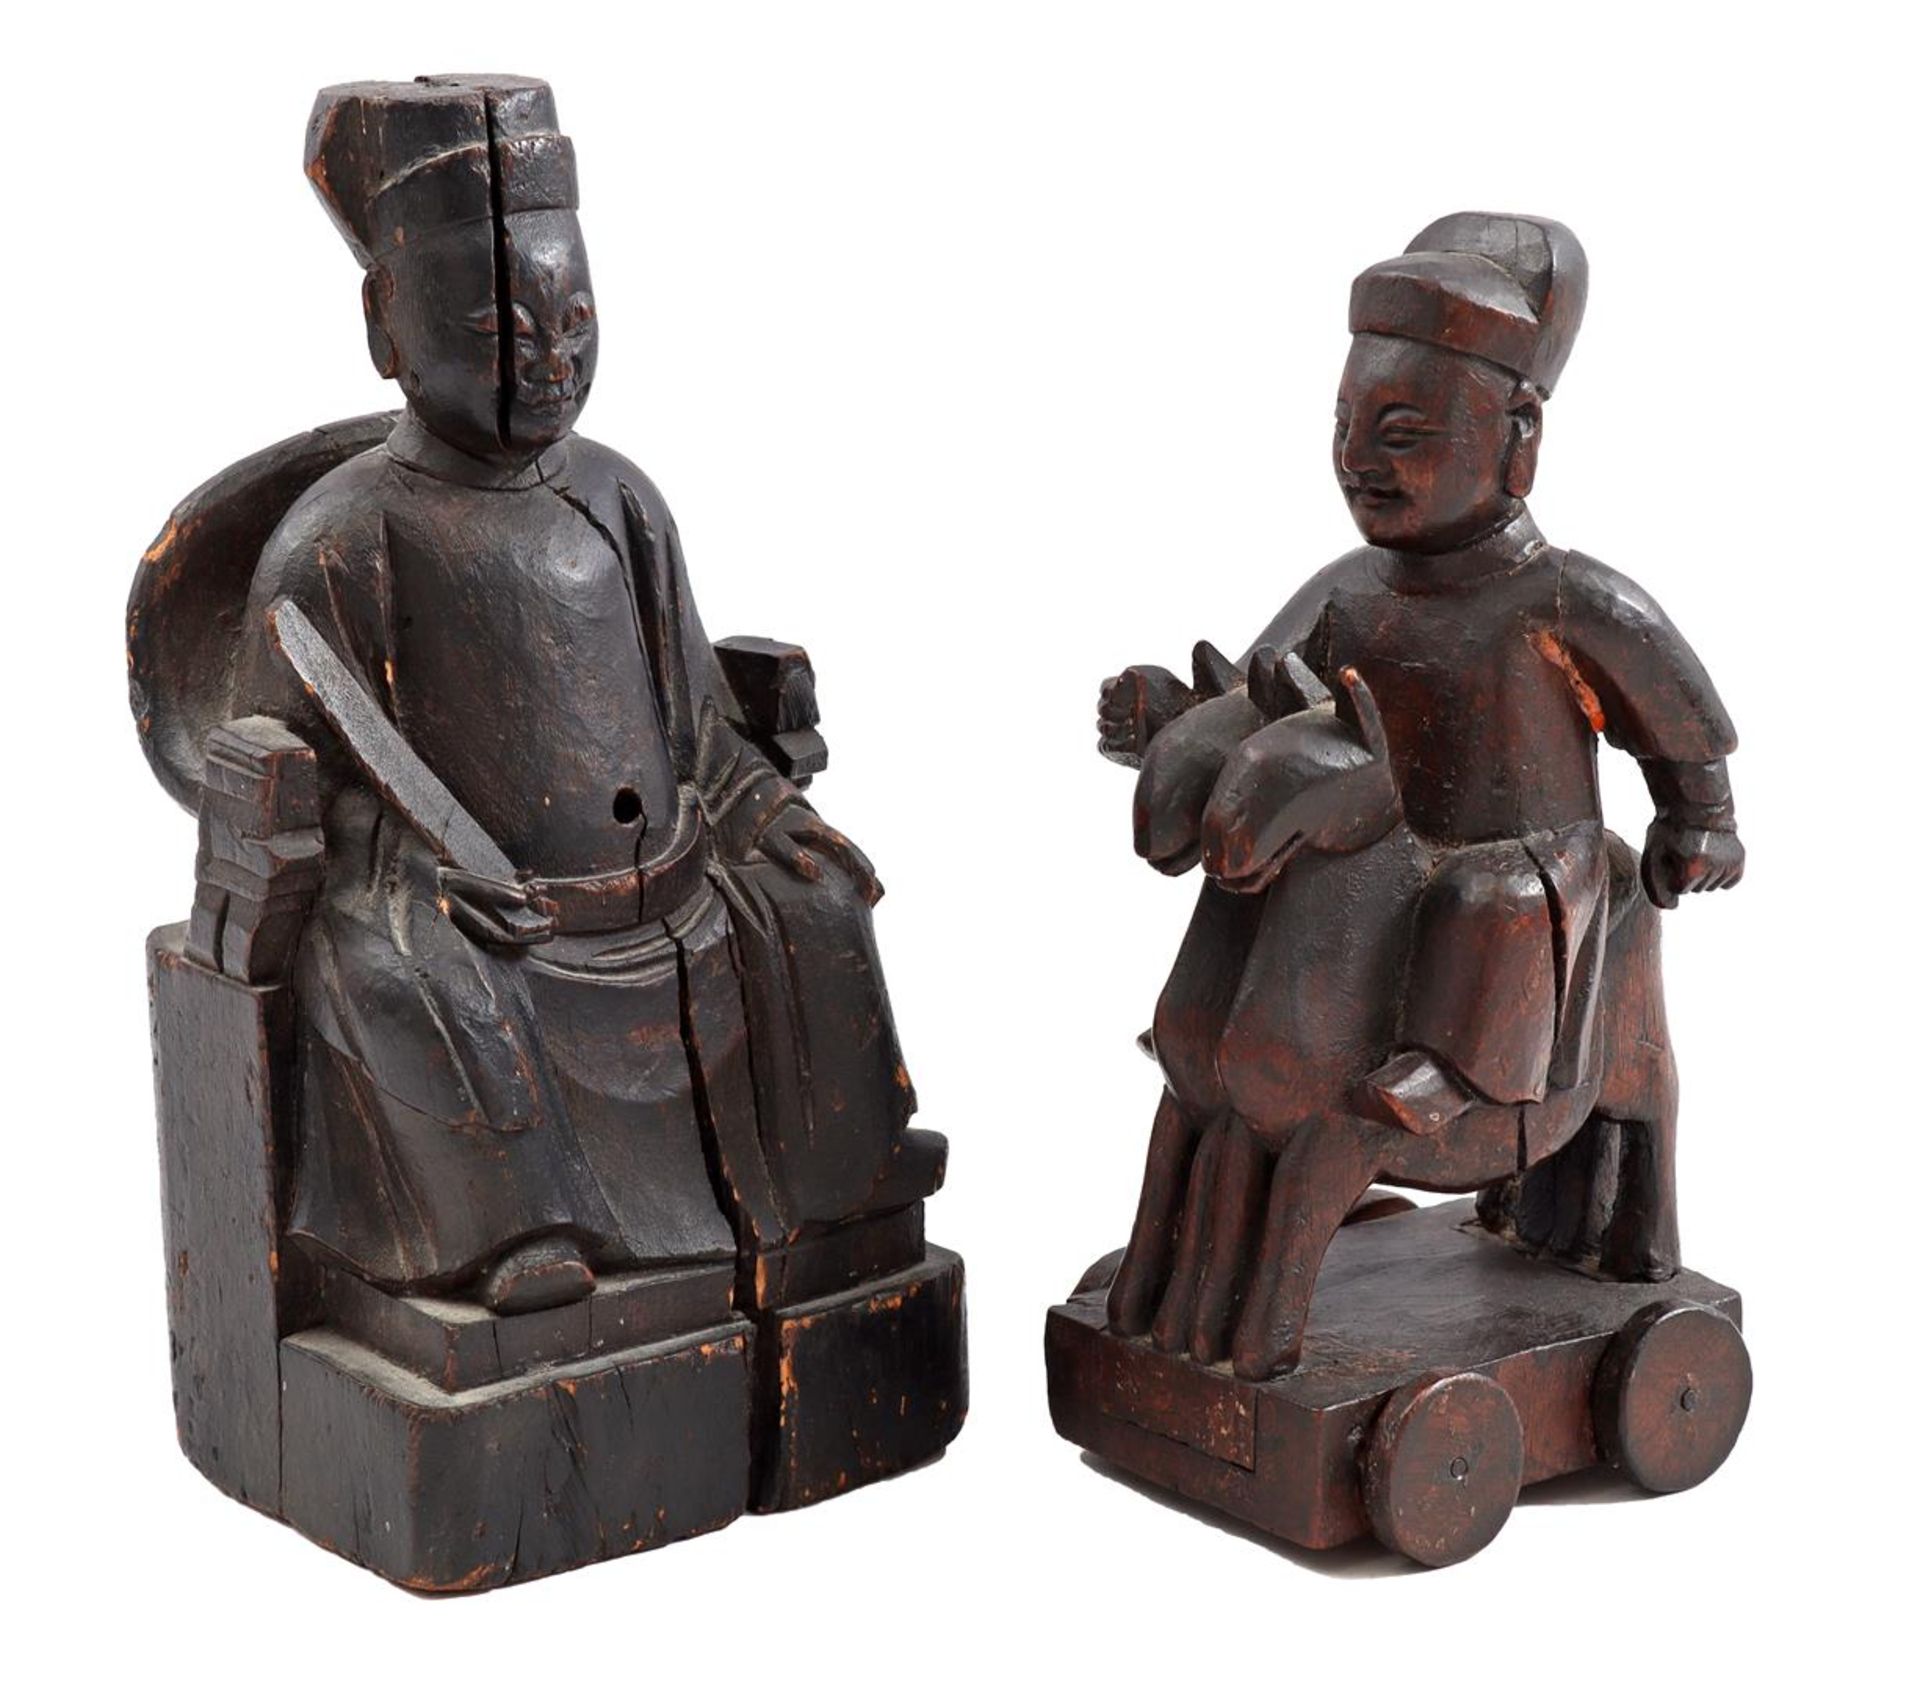 2 wooden sculptures